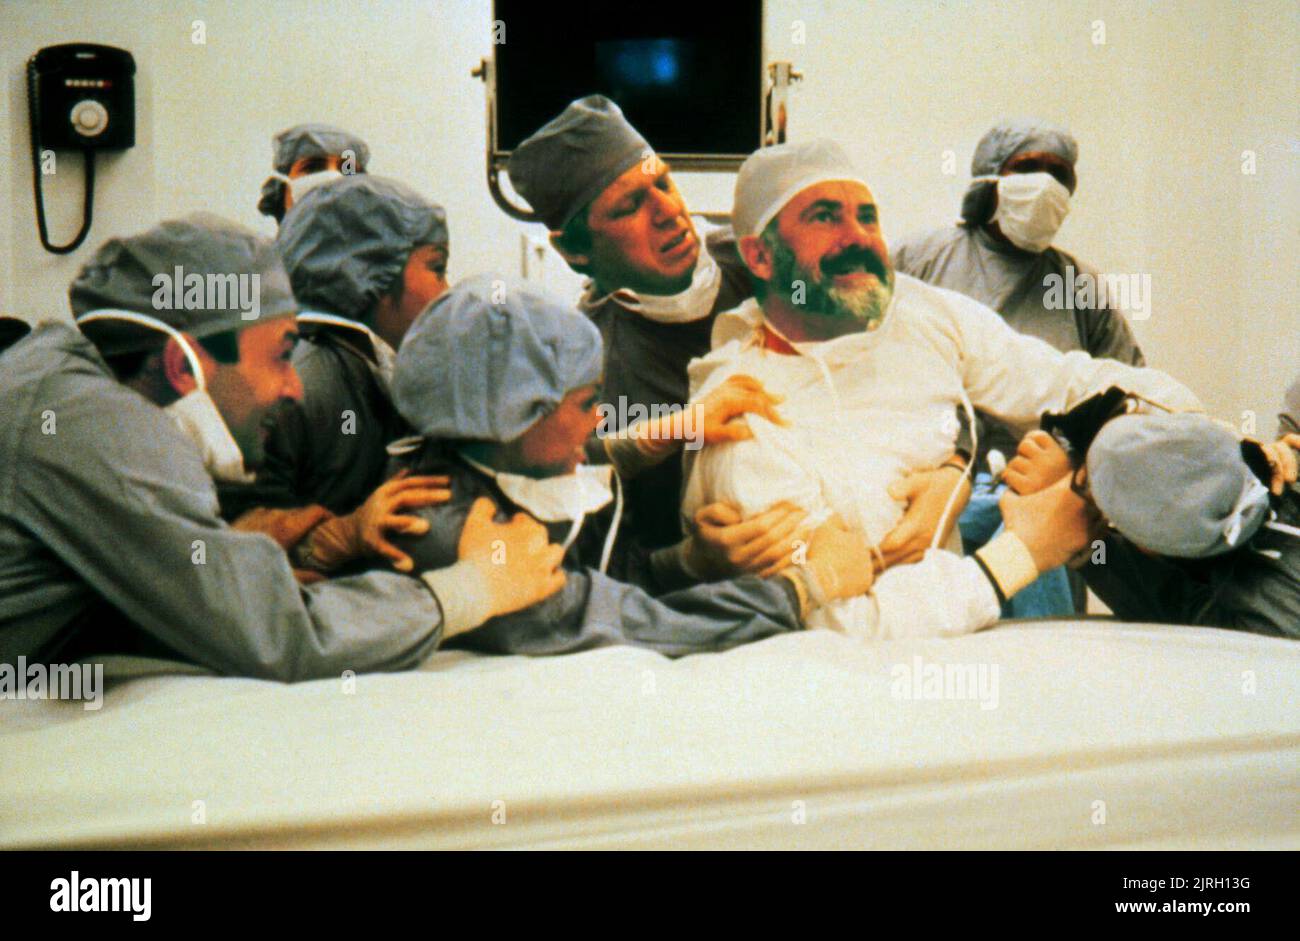 DABNEY COLEMAN, d'autres, de jeunes médecins dans l'amour, 1982 Banque D'Images